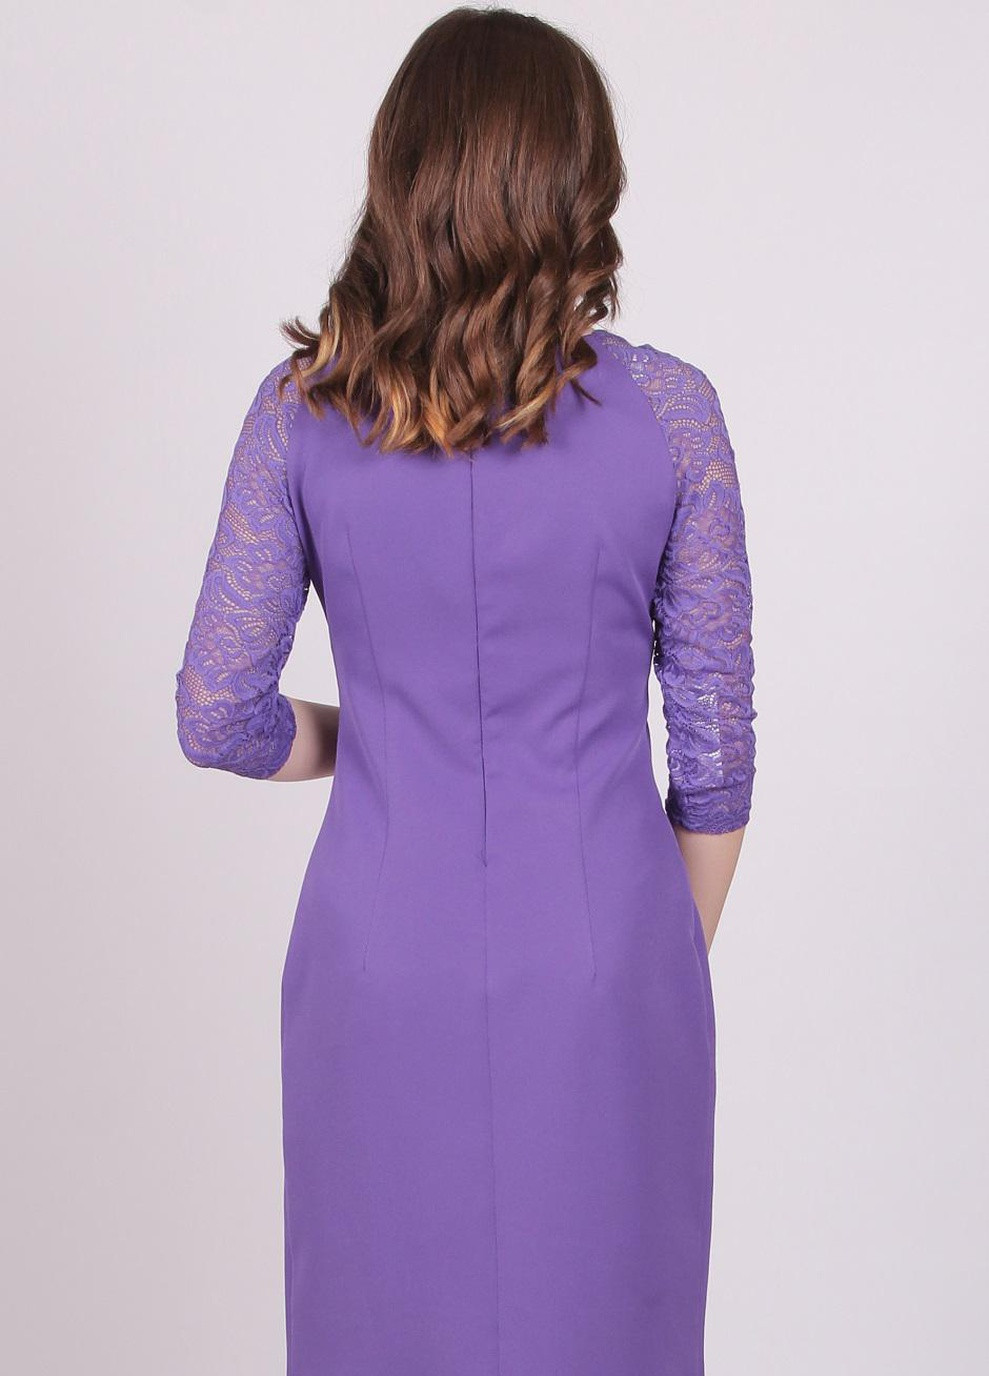 Фиолетовое платье 558 креп фиолетовый Актуаль